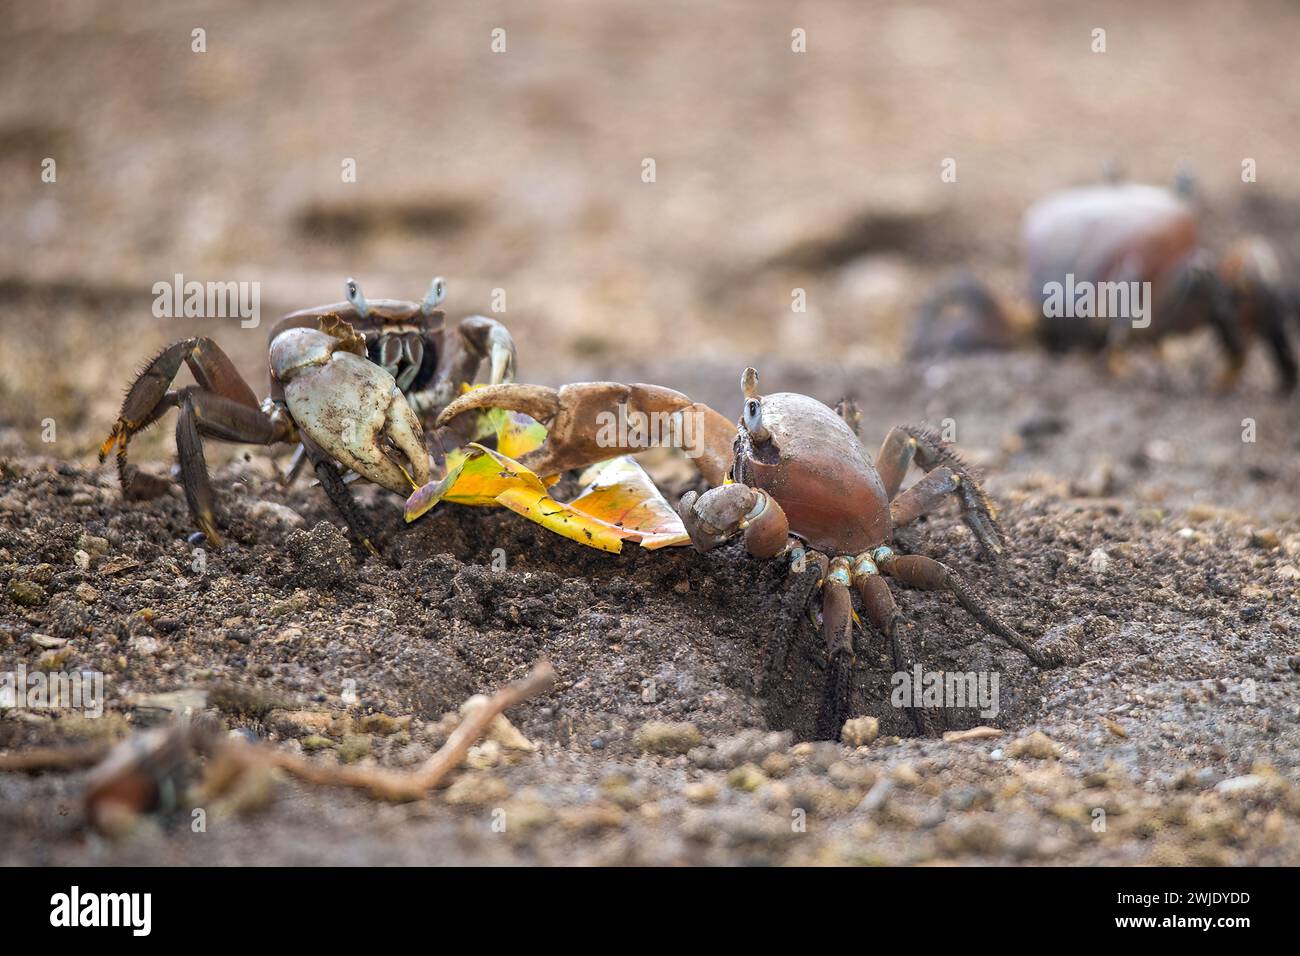 Zwei Landkrebse, Cardisoma carnifex, kämpfen um den Besitz eines gefallenen Blattes. Taha'a, Gesellschaftsinseln, Französisch-Polynesien Stockfoto